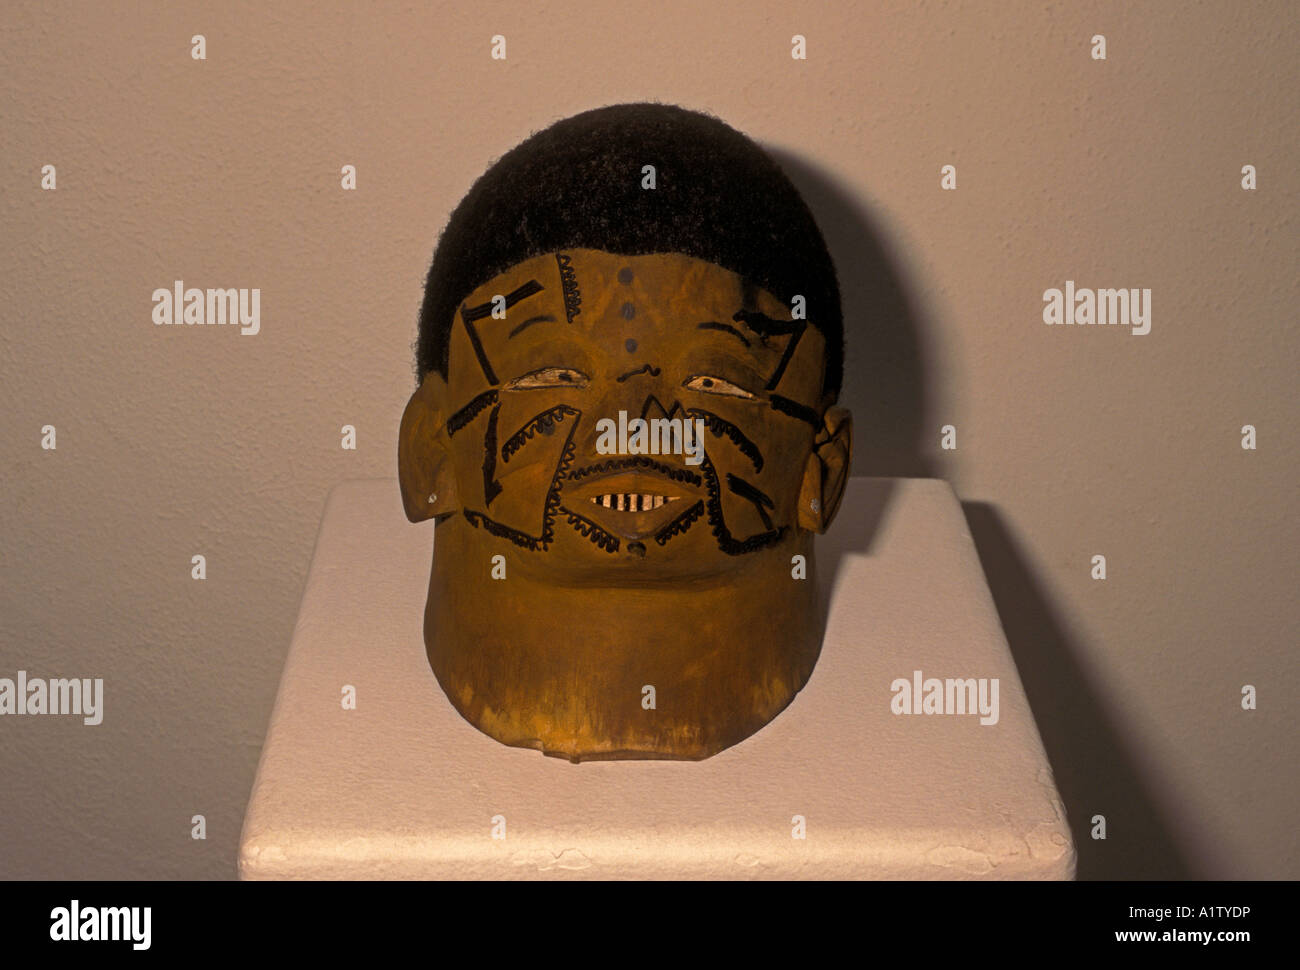 Helm-Maske, Maske, aus Holz und menschliches Haar, 24 x 22 x 18 cm, aus Tansania, Makonde Kultur, National Gallery, Harare, Zimbabwe, Afrika Stockfoto